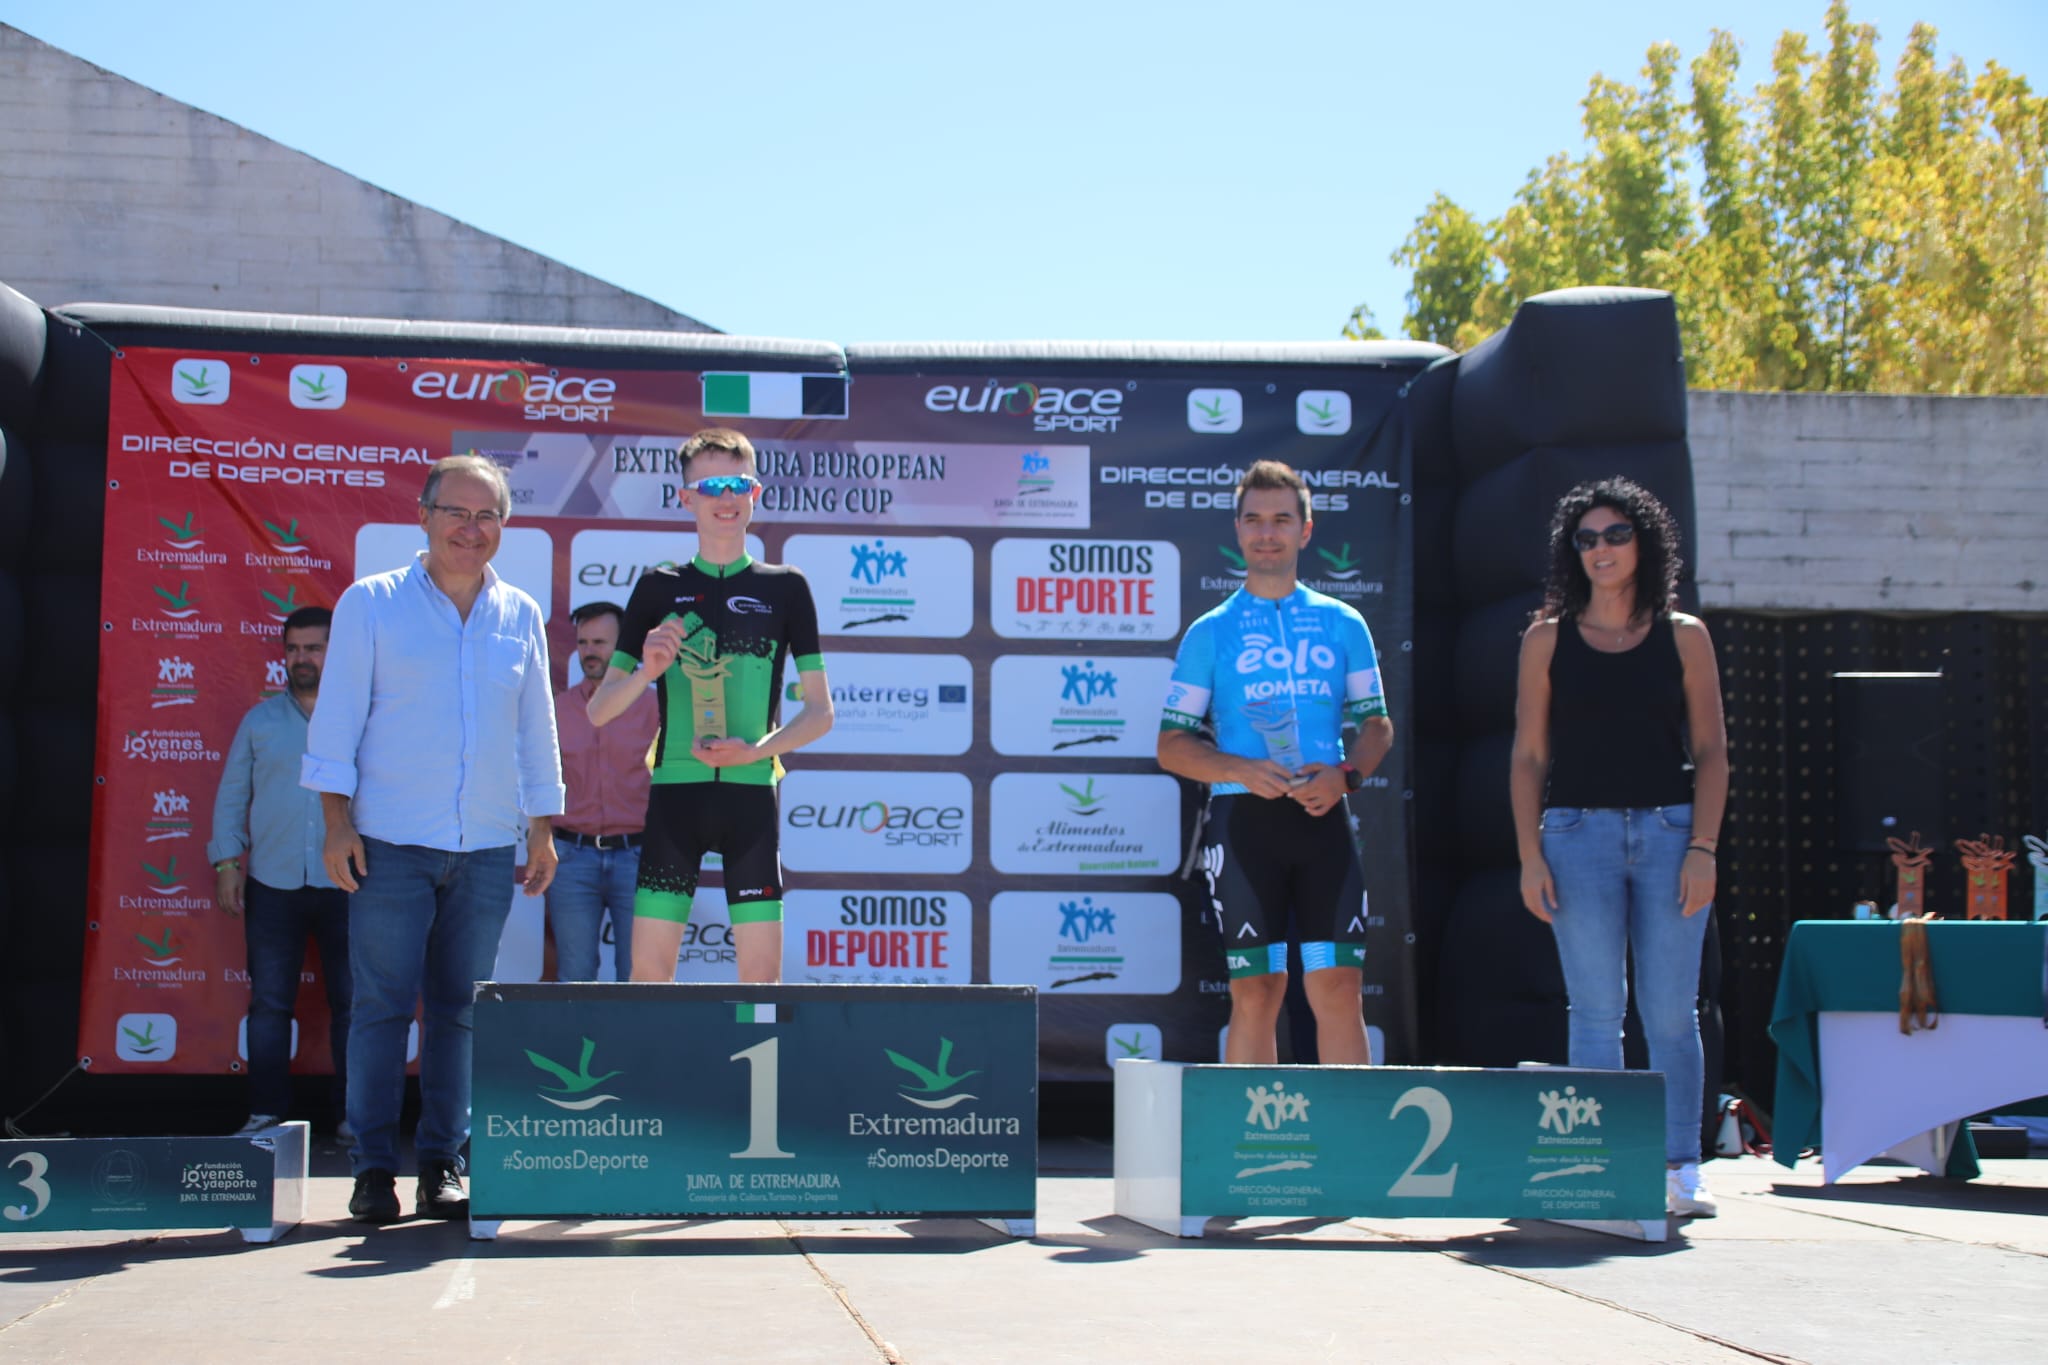 Una joven Selección Española se luce en la Extremadura European Paracycling Cup